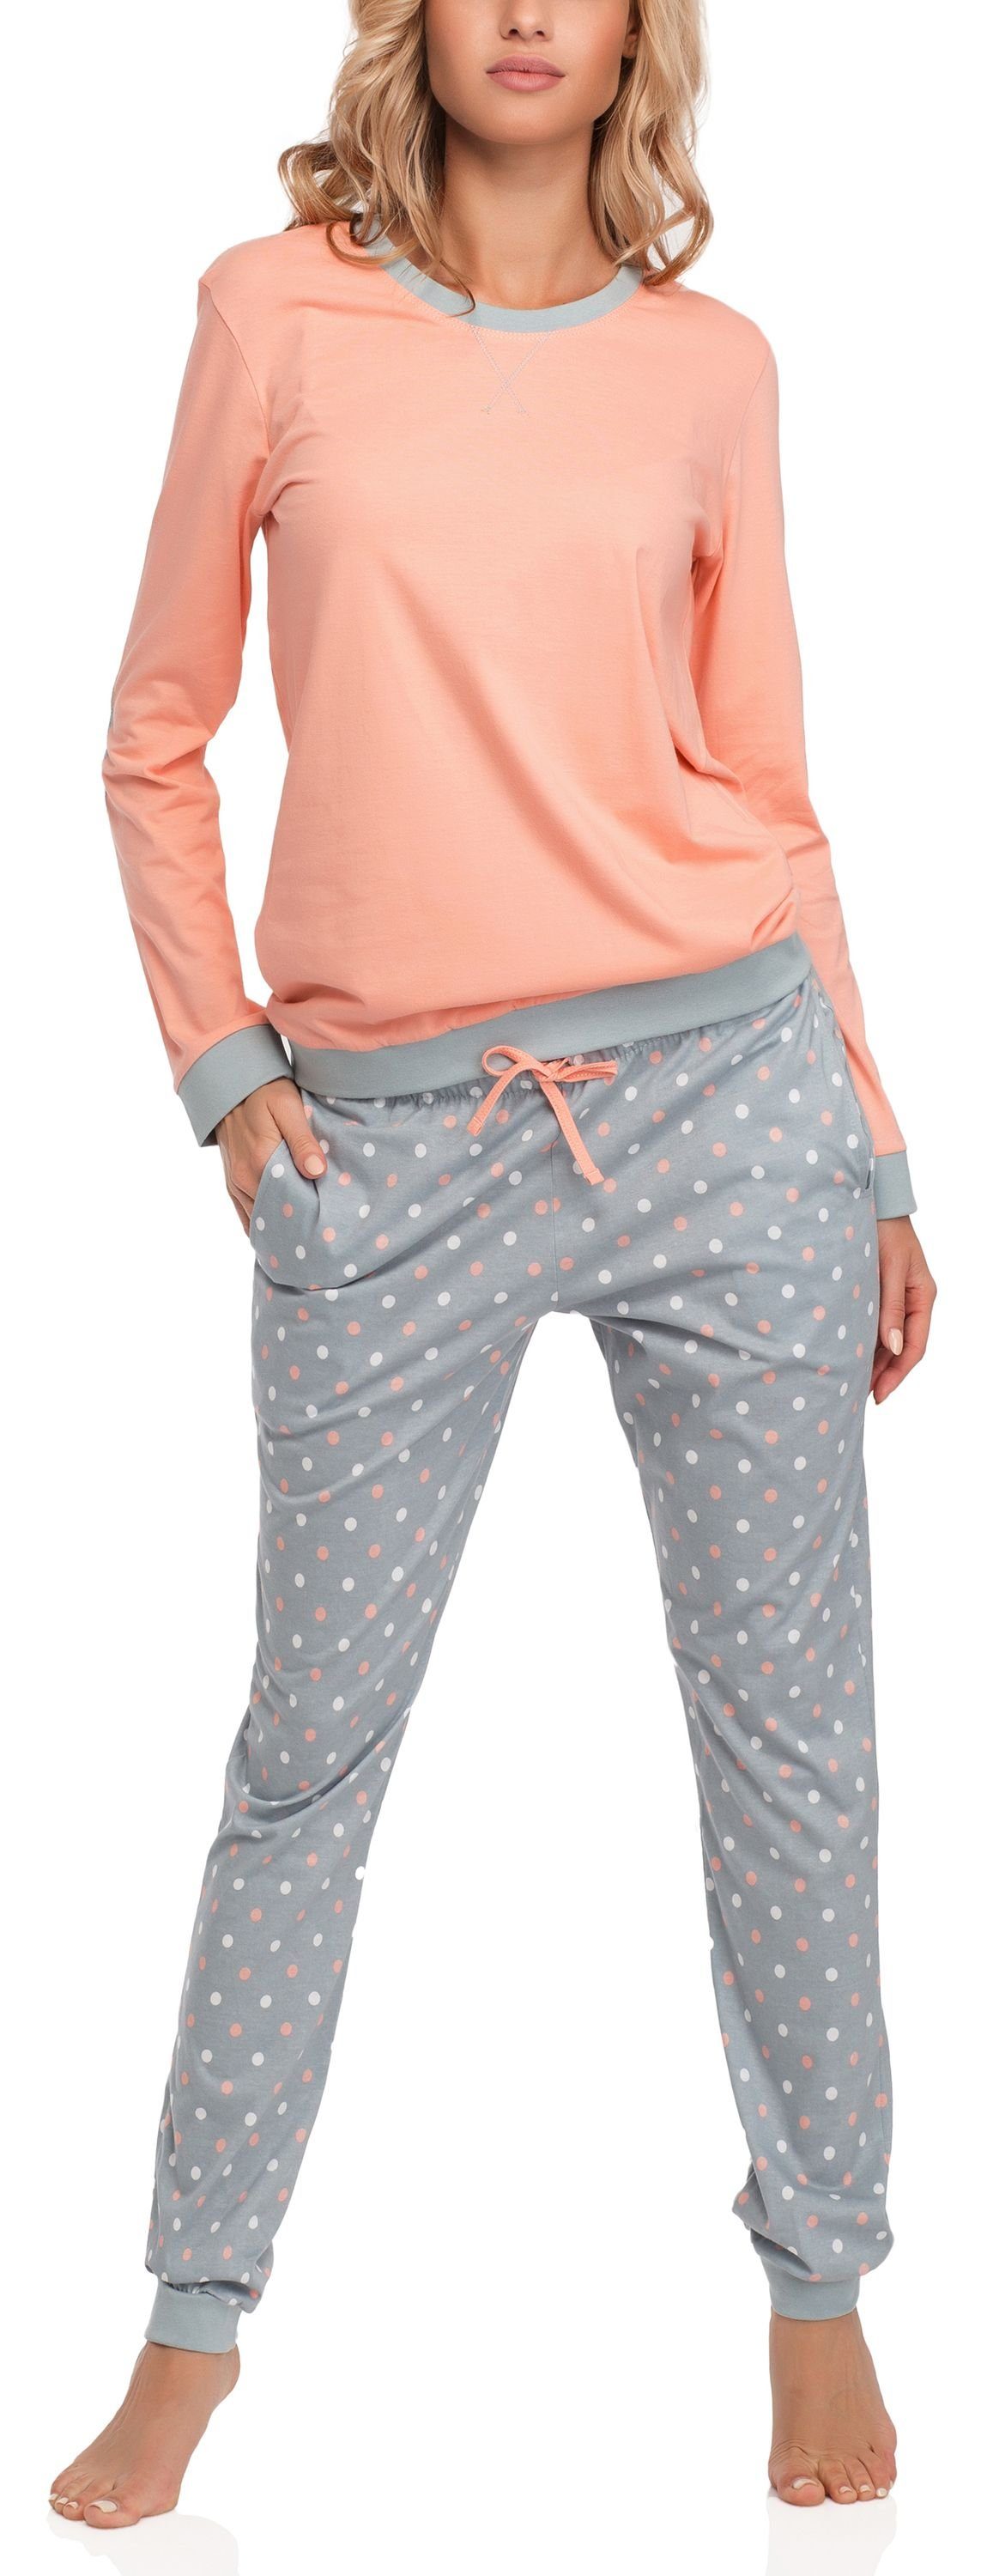 Cornette Schlafanzug Damen Schlafanzug Zweiteiler Pyjama Langarm mit Rundhals Baumwolle 634 Lachs/Grau